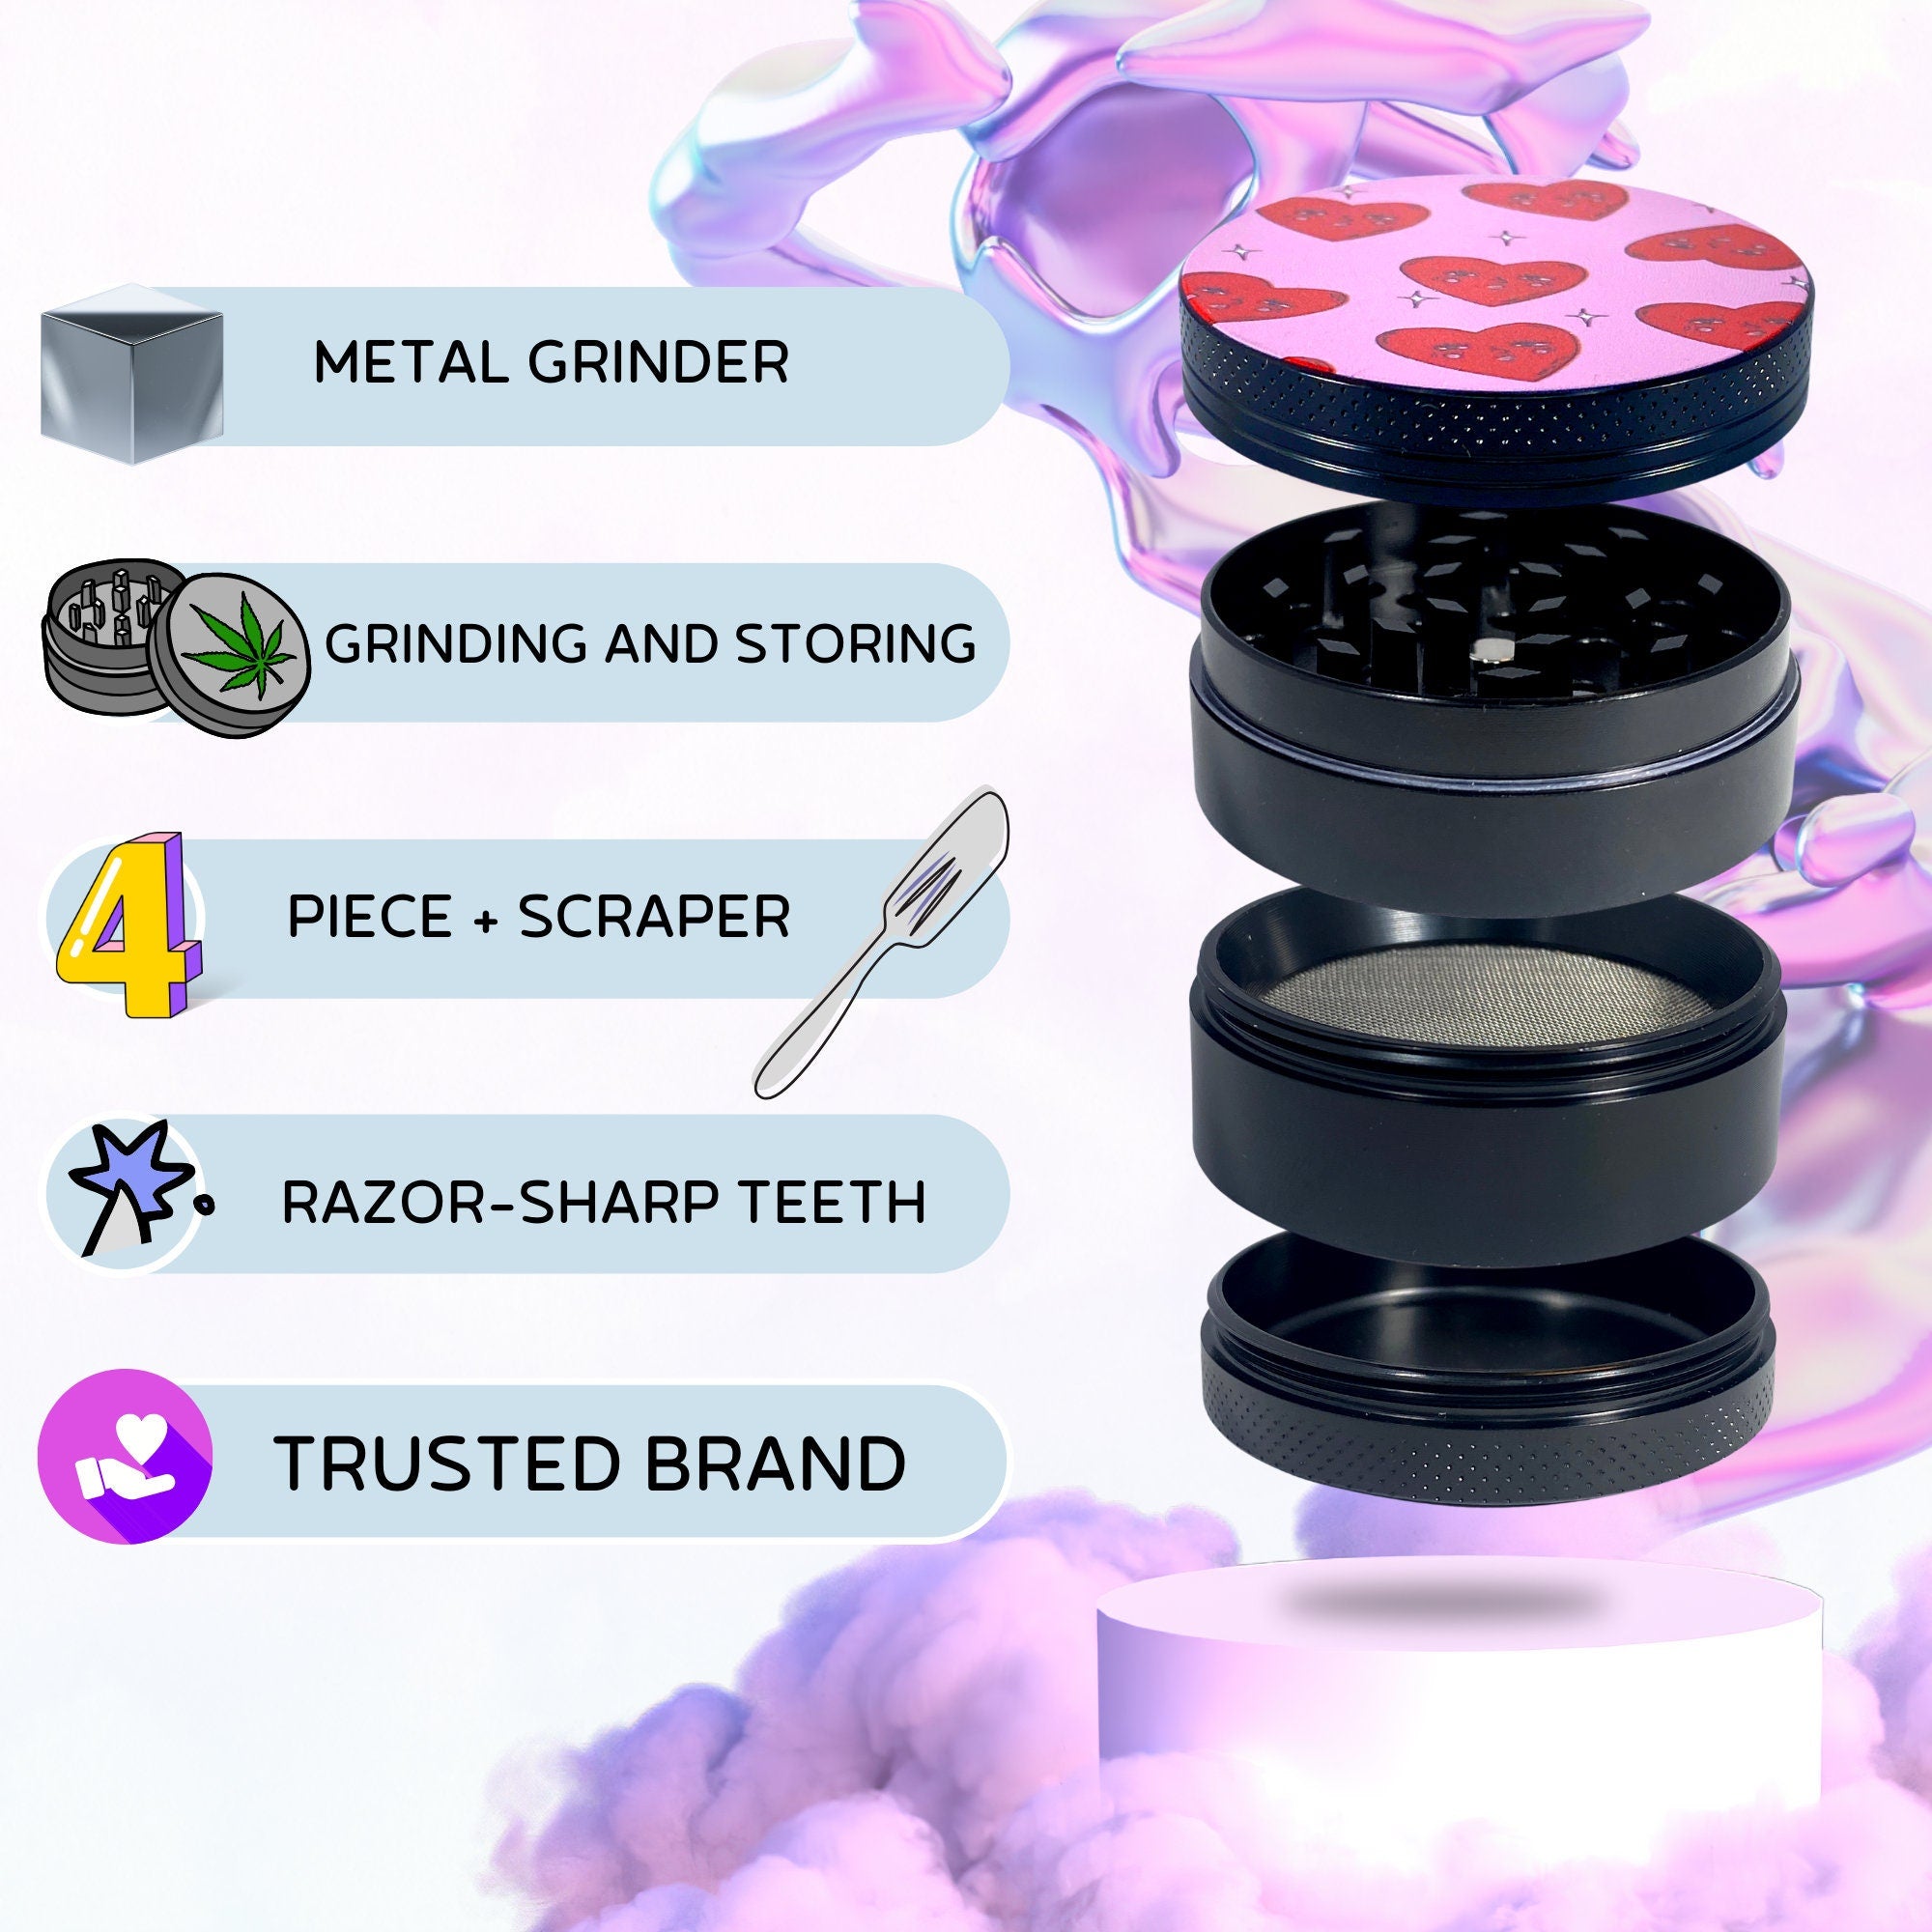 Cute Weed Grinder | Heart Grinder, cannabis grinder, weed accessories, 4 piece grinder, Metal grinder, Pink Trippy grinder, Girly grinder